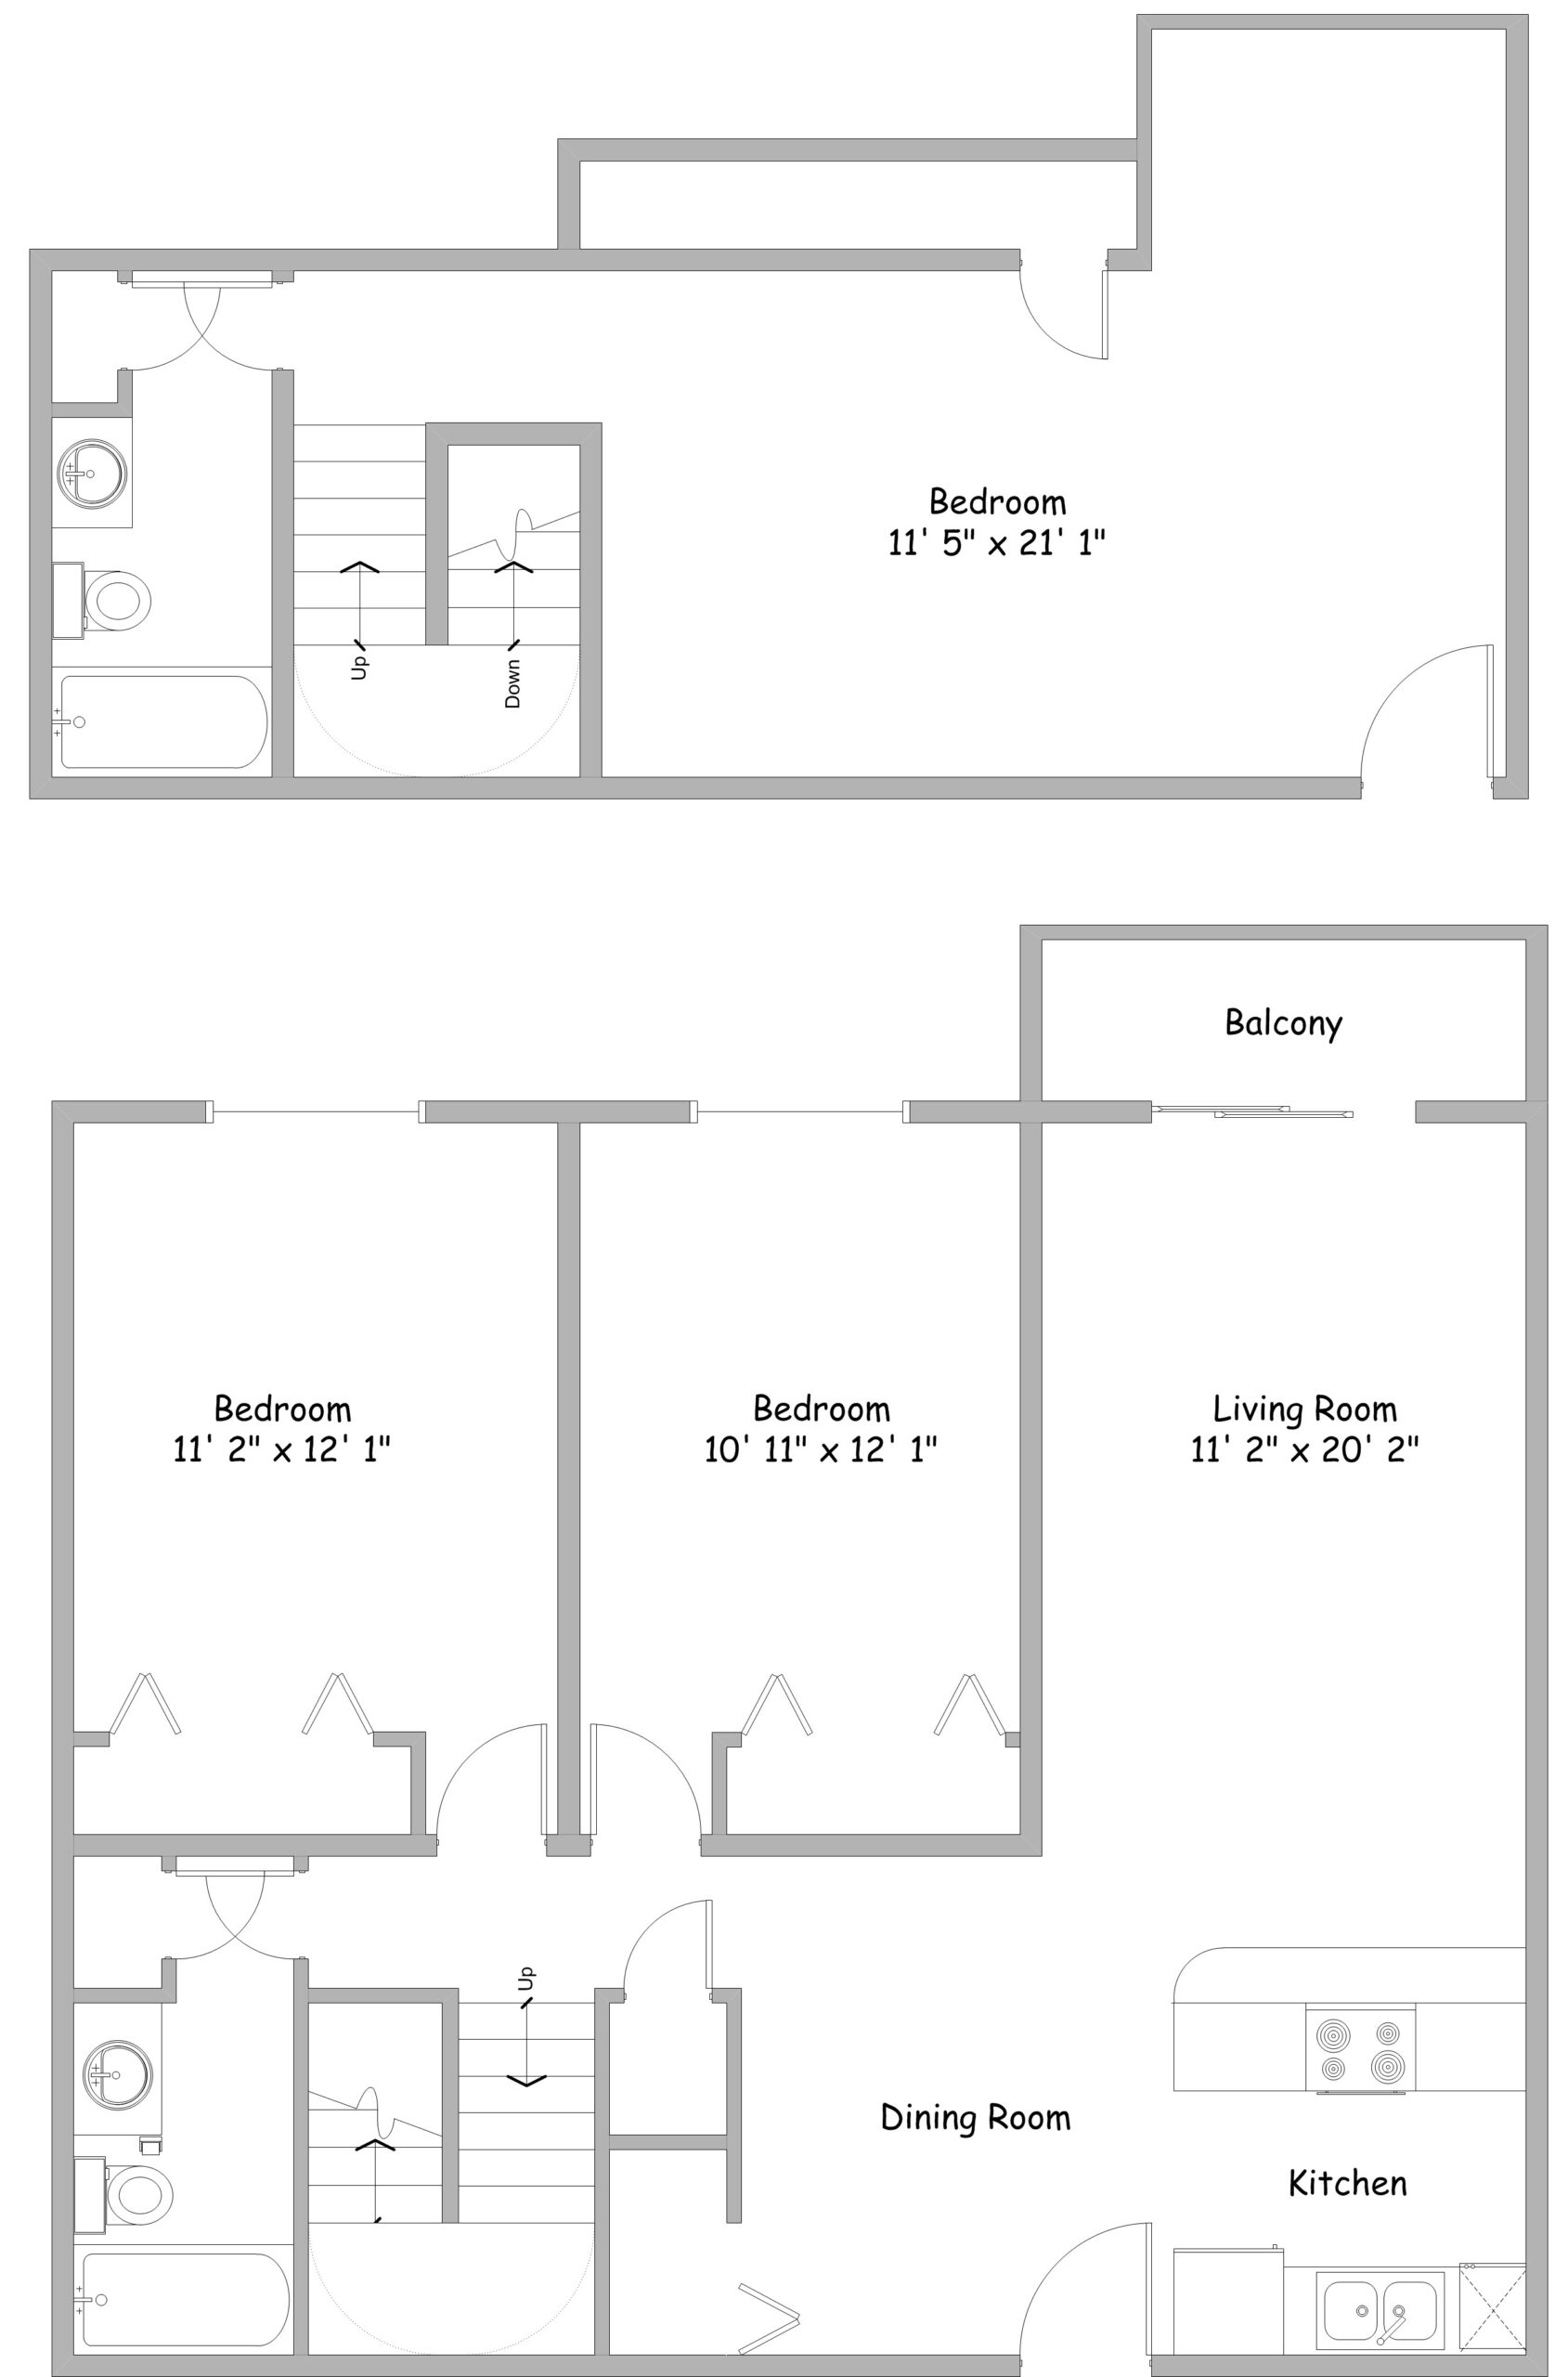 Popular floor plan for a 3 bedroom flat | viewfloor co with regard to three bedroom flat building plan